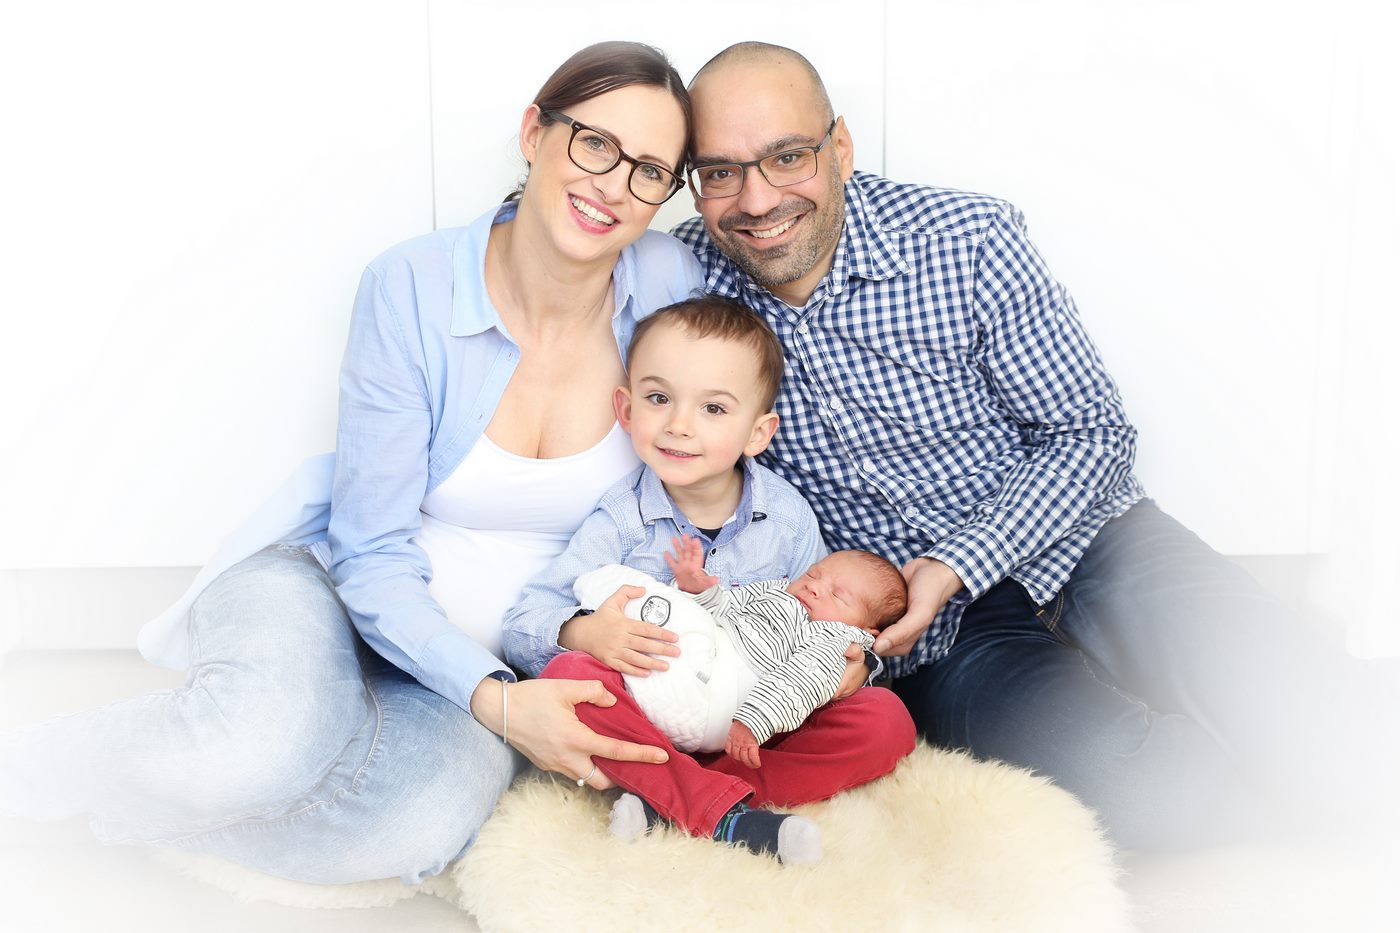 Familienfoto von einem Familienshooting in Farbe mit Baby